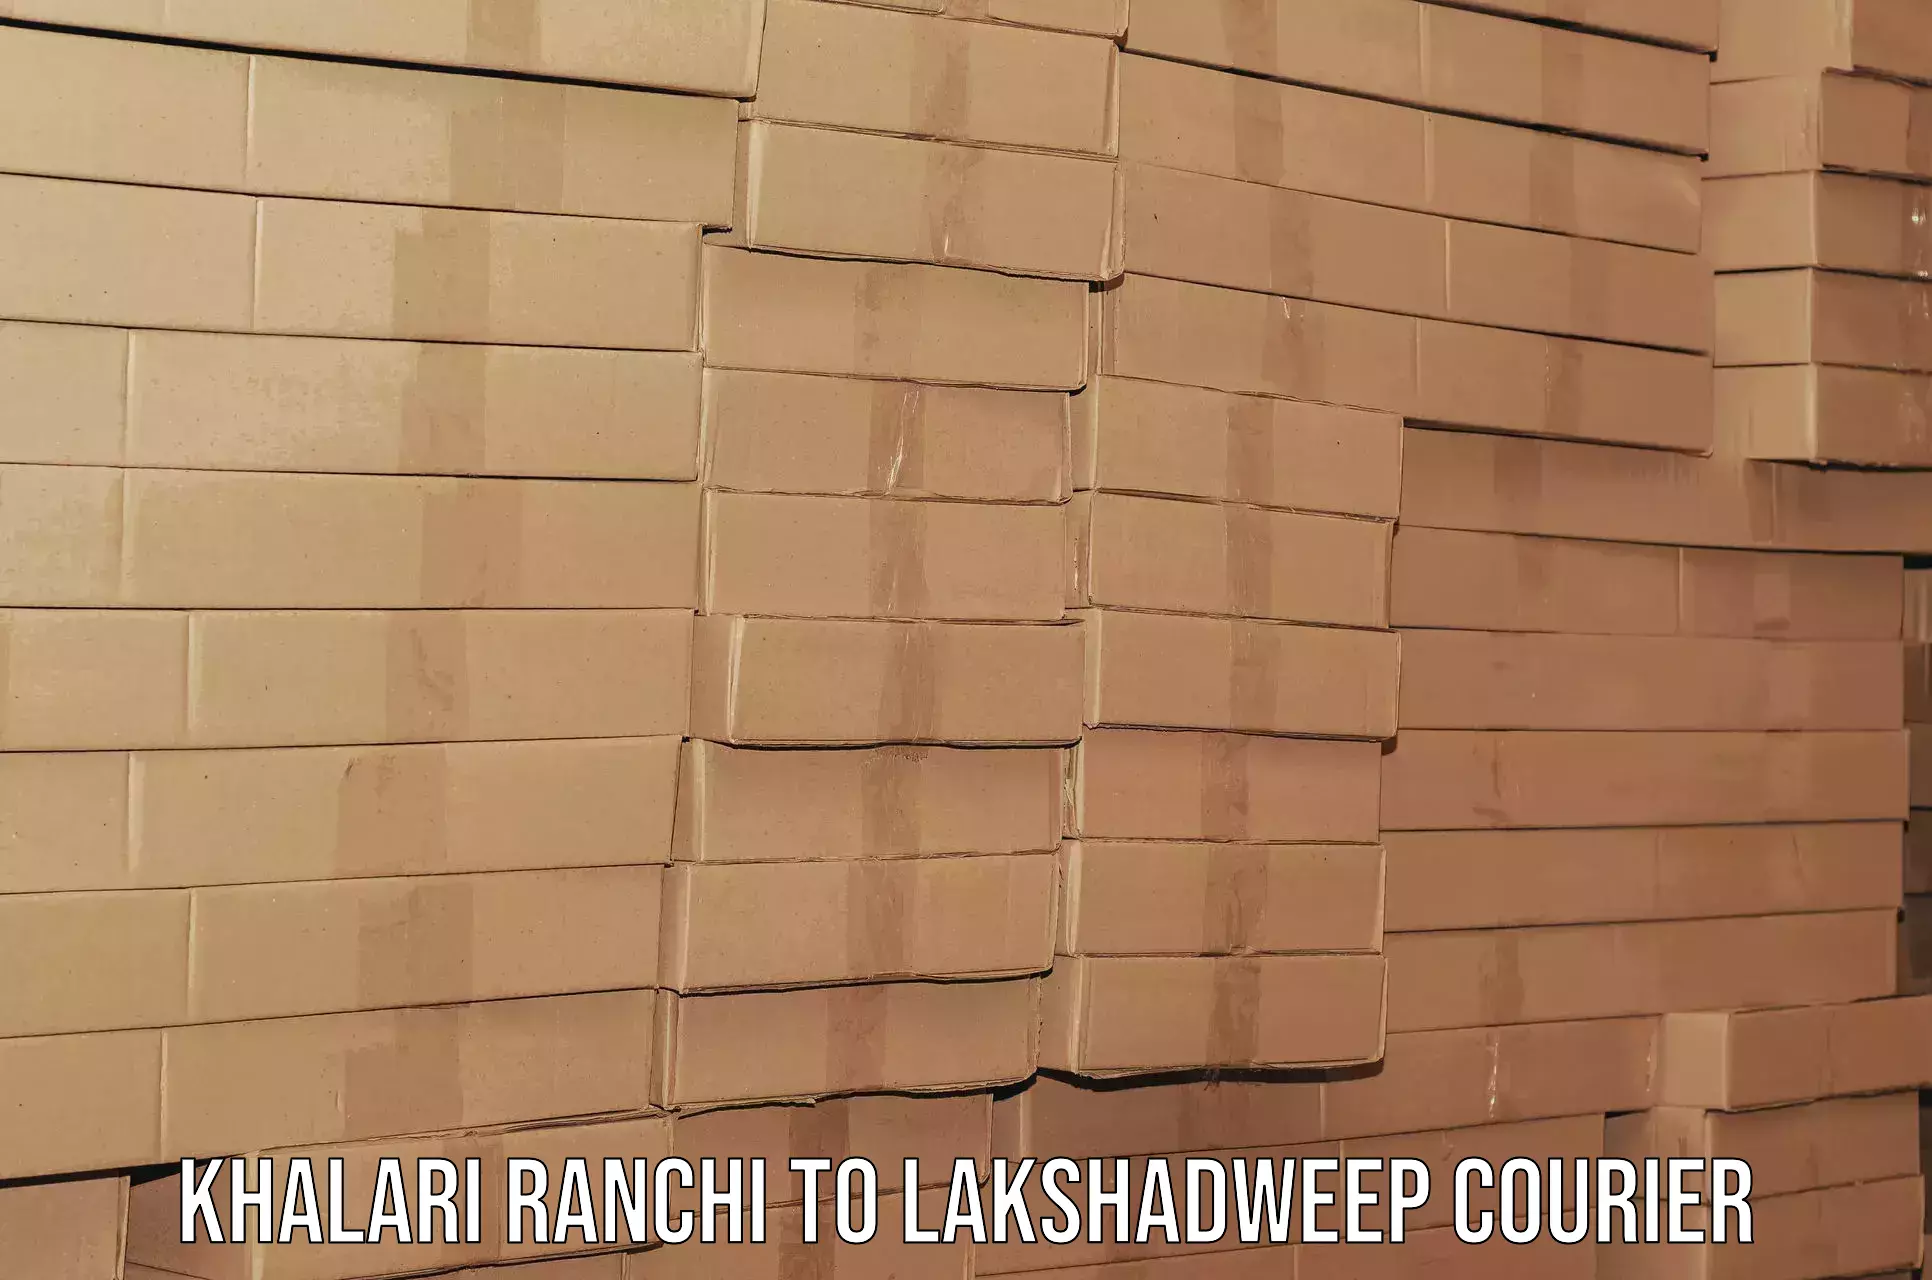 Professional moving company Khalari Ranchi to Lakshadweep